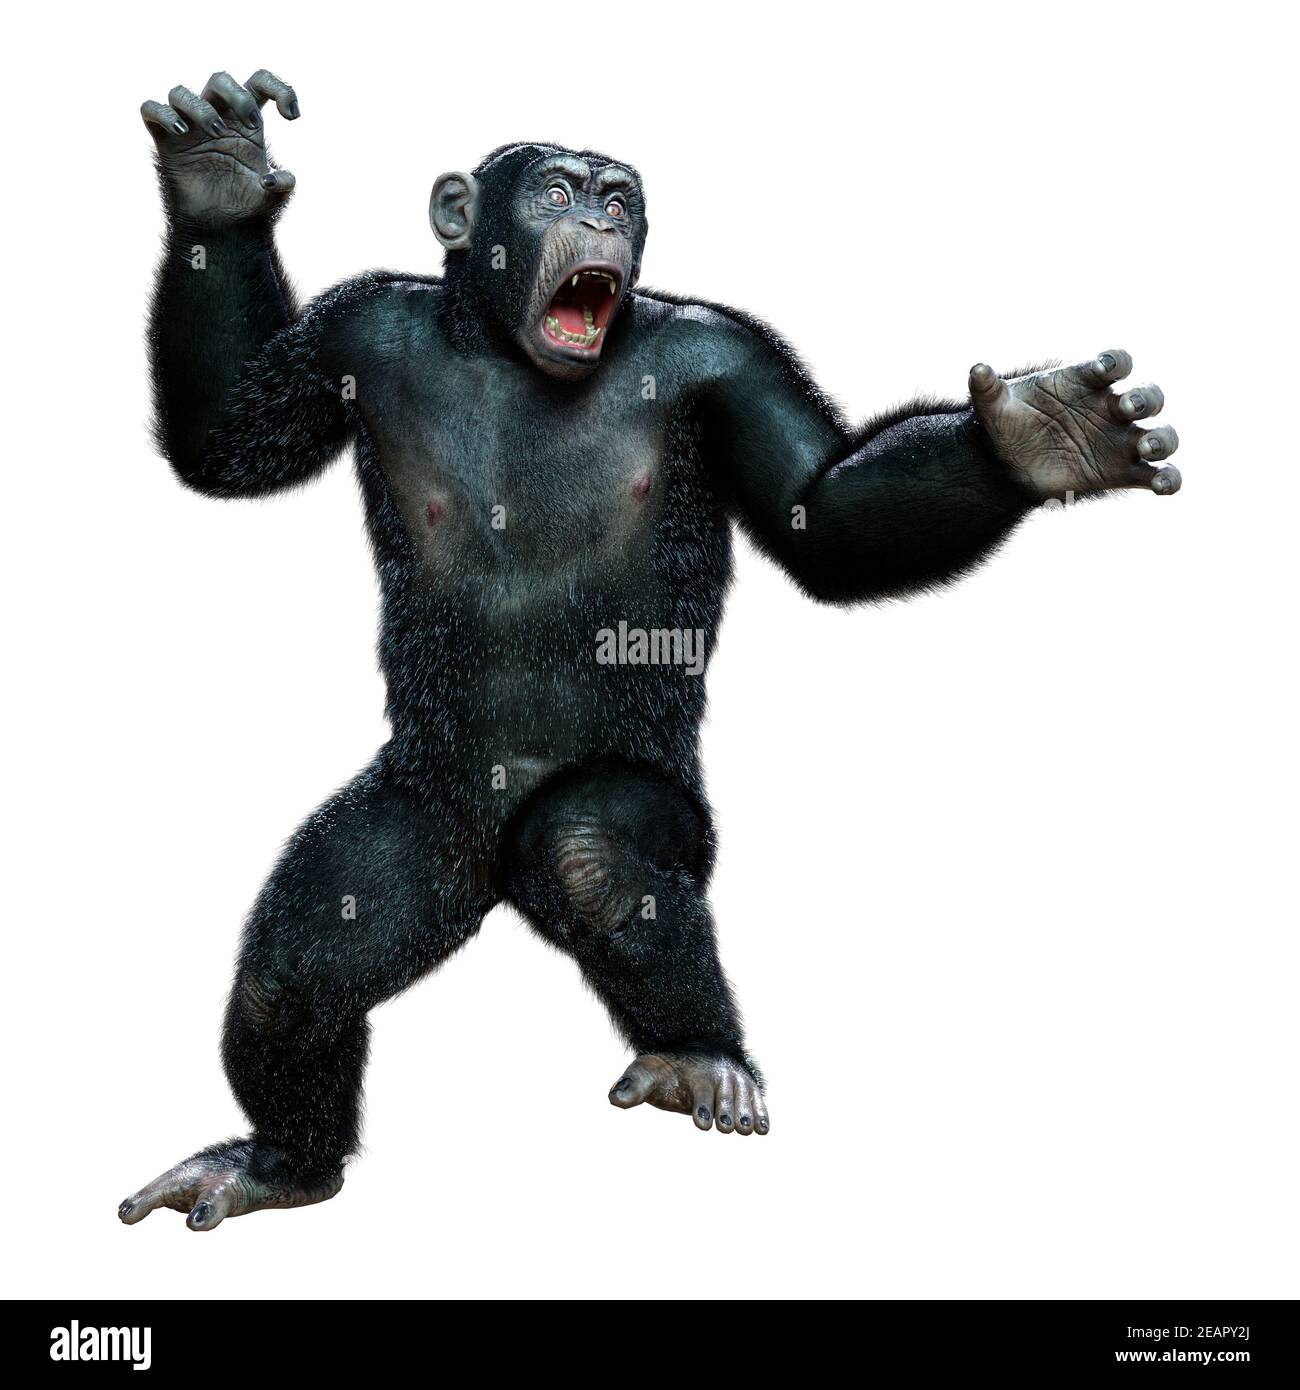 presentacion-3d-chimpanzee-en-blanco-2eapy2j.jpg